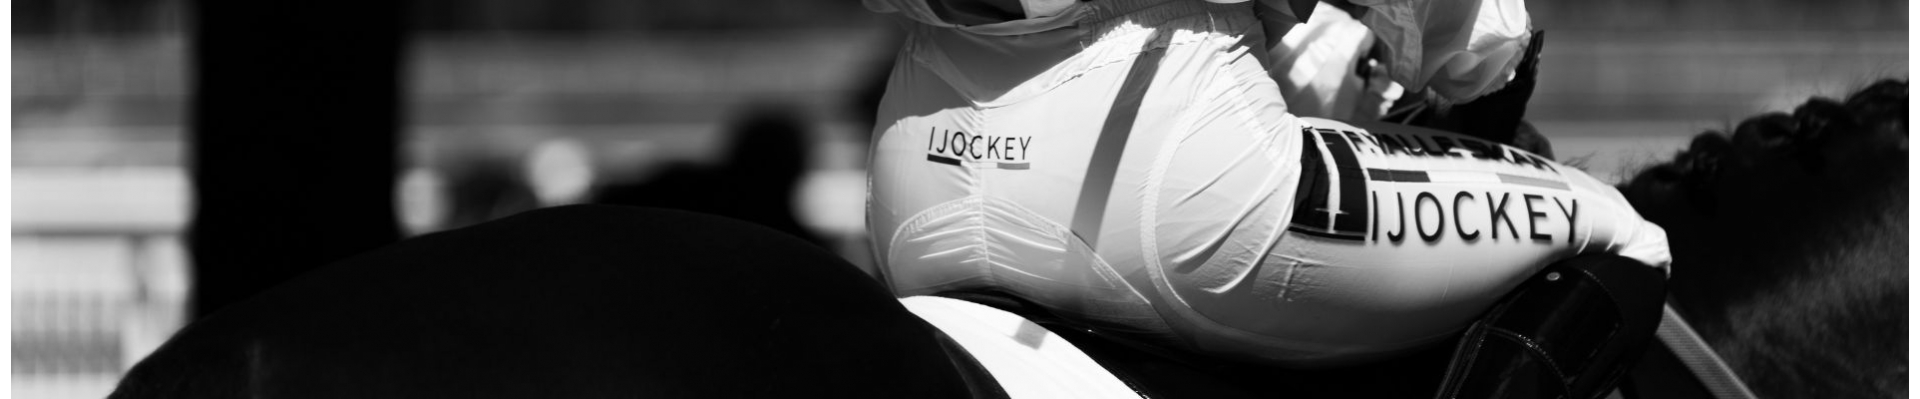 Equipment for Riders | iJockey